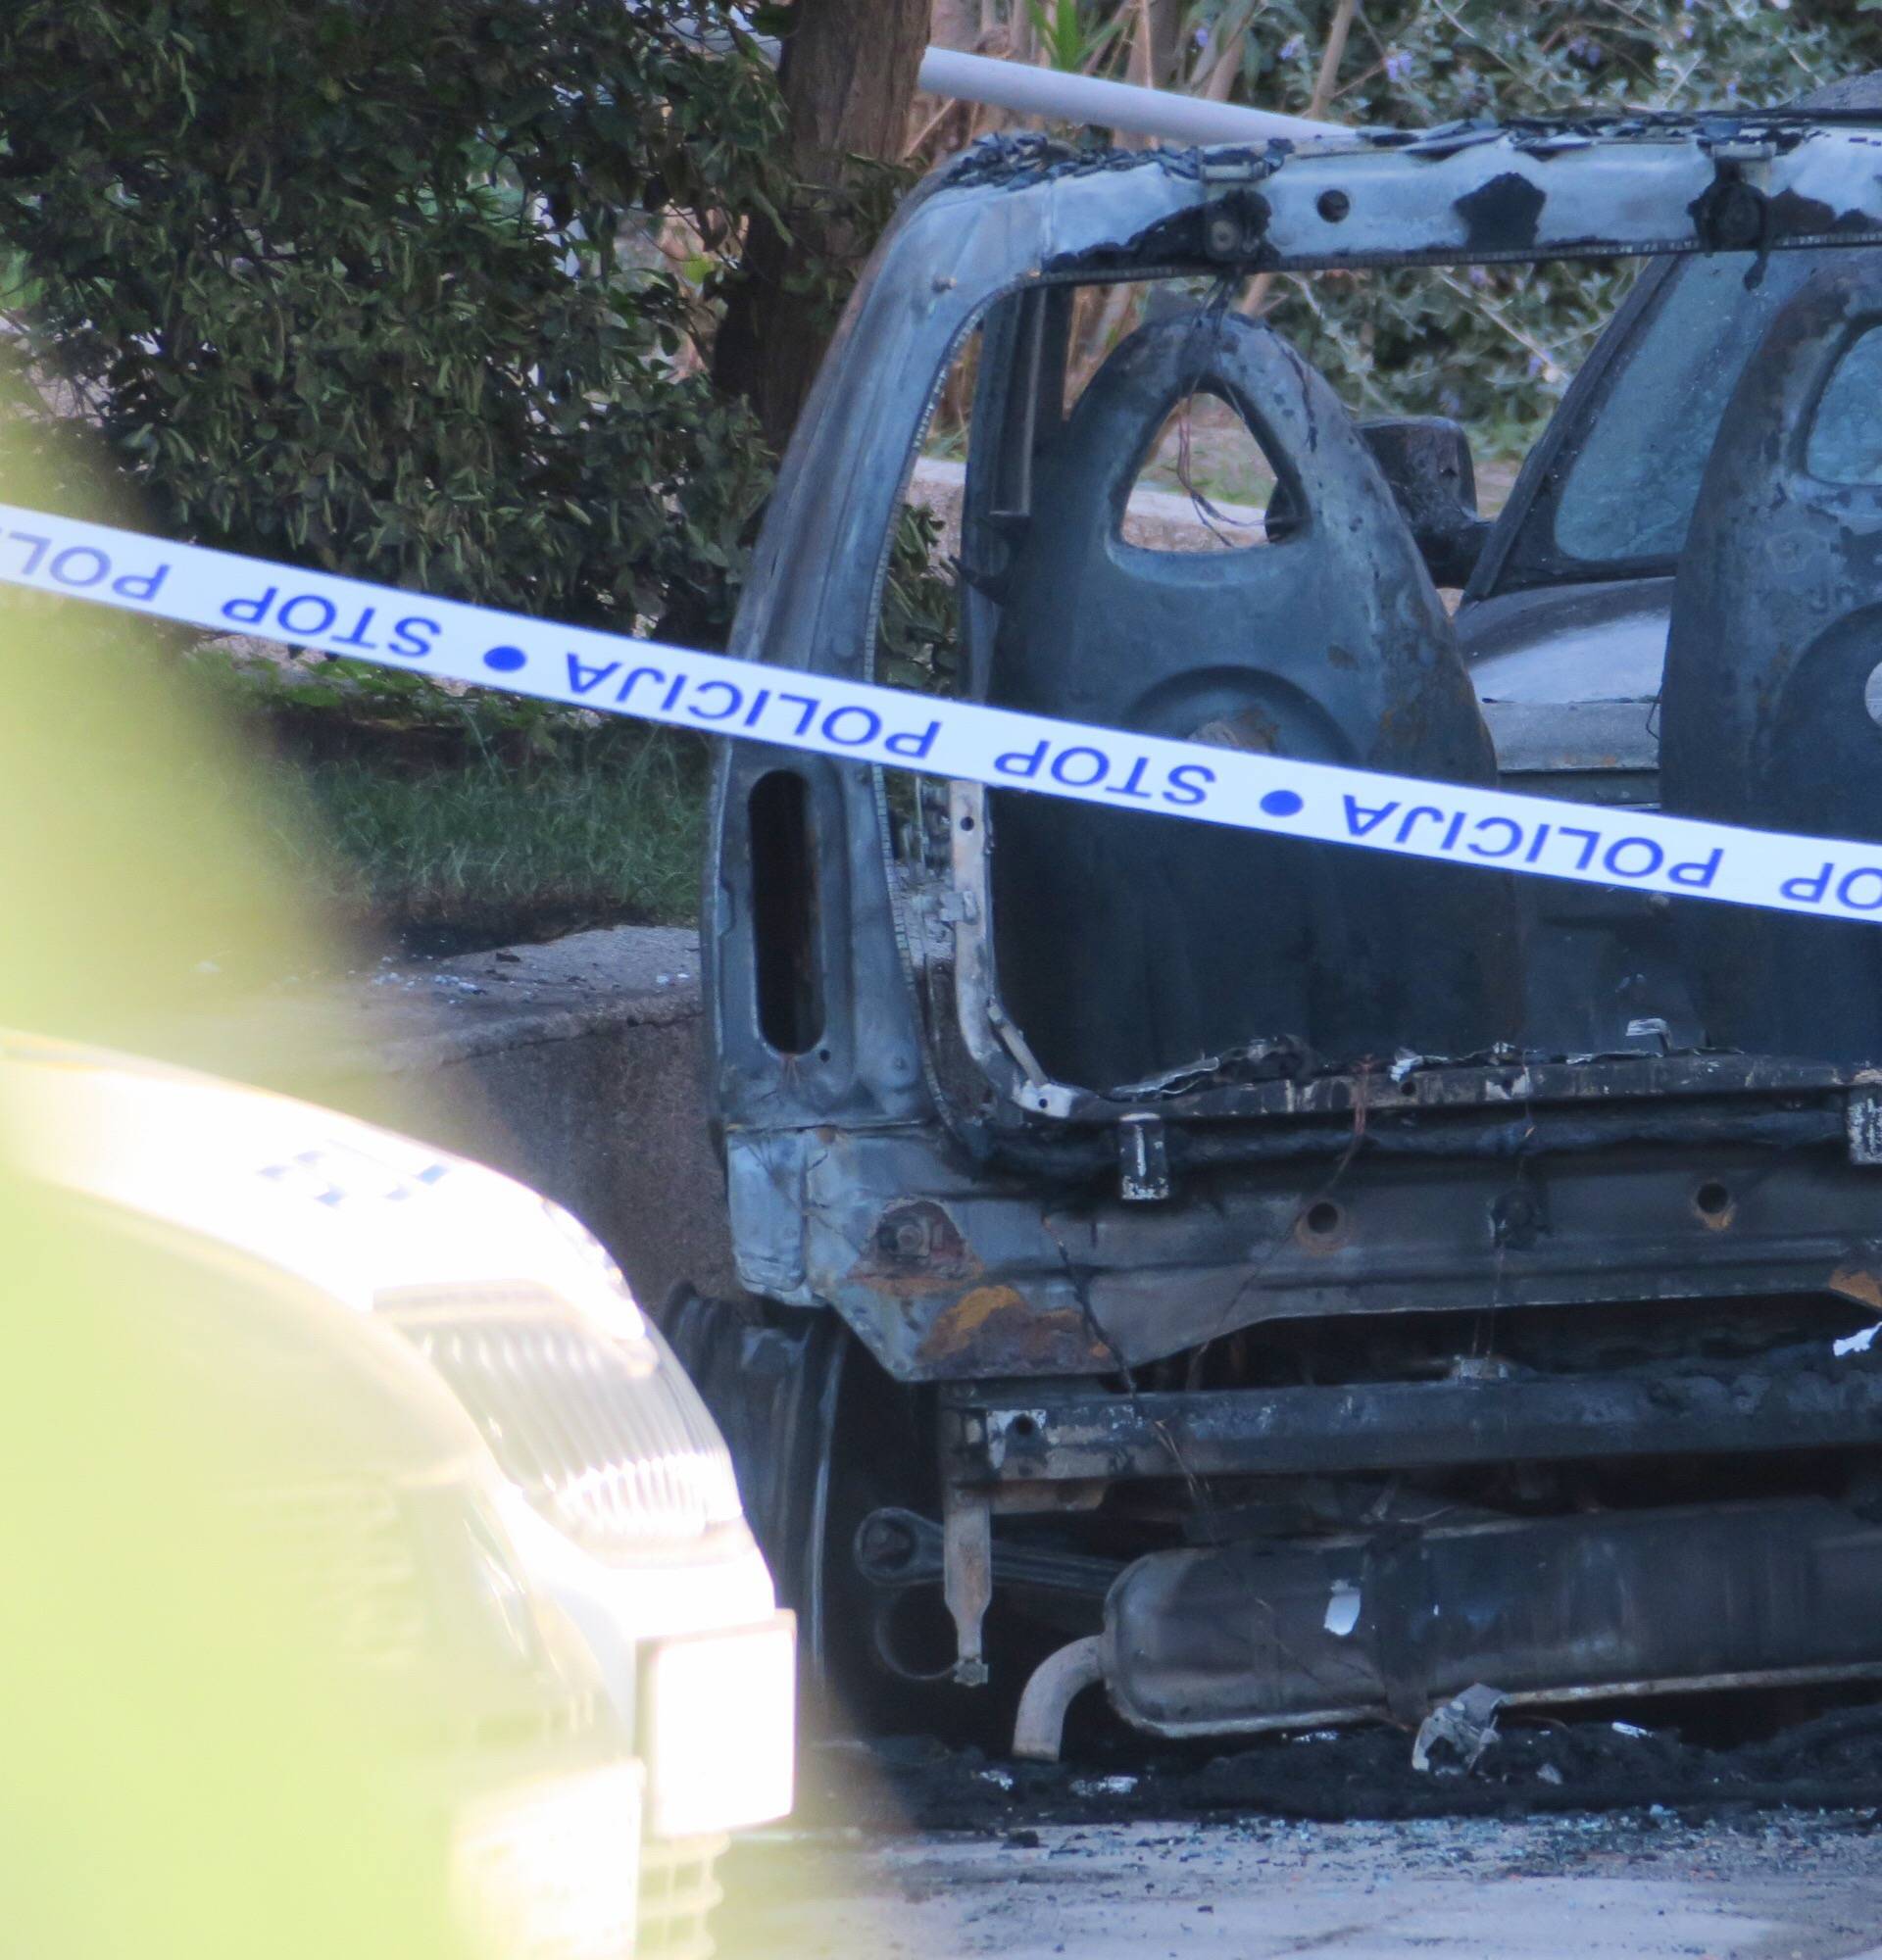 Sumnja se na podmetanje: U Splitu izgorjela tri automobila